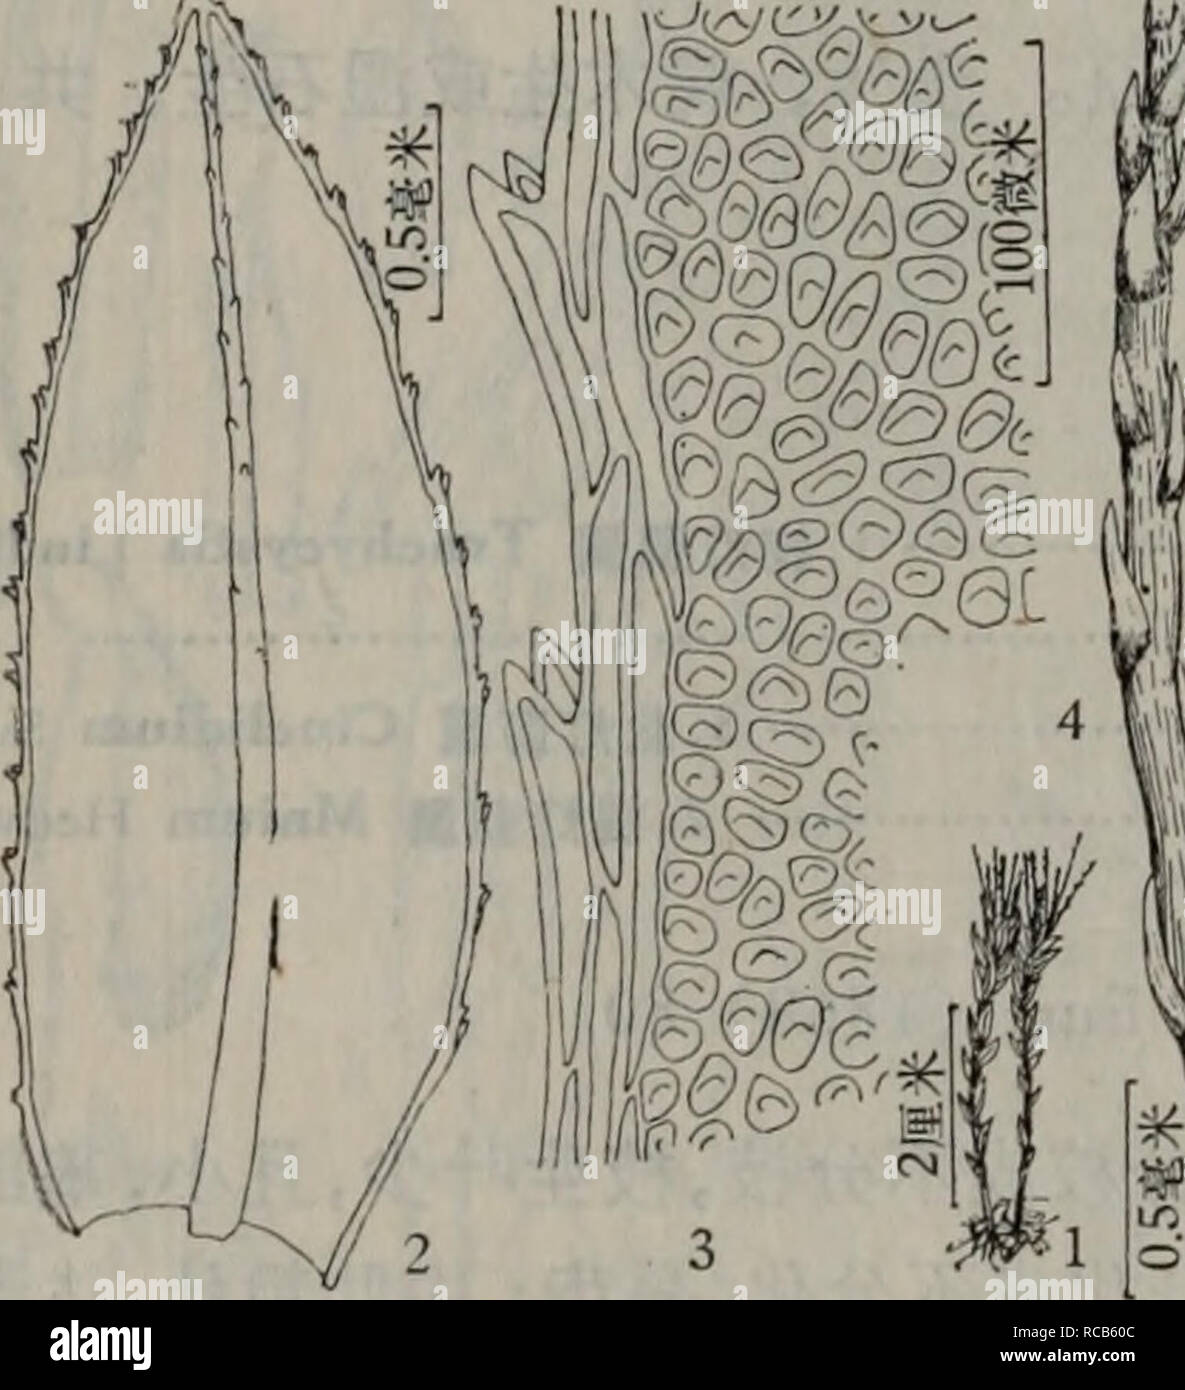 . dong bei xian lei zhi wu zhi. botany. -å¶ç¼ååï¼å ·ååé½¿ 2.é-æç£ç¯èT. flagellaris (Sull. et Lesq.) Lindb. 1. æç¯èTrachycystis microphylla (Doz. et Molk.) Lindb., Obs. de Mniac. Eur. (1868) 80; Chen, Gen. Muse. Sin. I (1963) 276. Mnium microphyllum Doz. et Molk., Muse. Fr. Ined. Archip. Indici, II (1846) 26ï¼ fig. 12; Broth., Symb. Sin. IV (1929) 61. Rhizogonium microphyllum Jaeg. Ad. 1(1873â74) 686. æ¤ç©ä½å°ï¼1 ä¸ 1.5åç±³é«ï¼ç¨ç¥é«ãèç´ç«ï¼å¤å¨çæ®èå¨å´åæ,ææ¡æåºå¾ç«ï¼å¶ å¸¸éä¸-äºèé¡¶ç«¯çç,å¹²ç¥åå·ç¼©ãèå¶å°ï¼é¿çº¦1æ¯«ç±³ï¼éæ«éå½¢ï¼æ¸å°ï¼æå¶è¾å¤§ï¼é¿æ« éå½¢ï¼é¿è¾¾2æ¯«ç±³,å®½çº¦0.6æ¯«ç±³ï¼å¶ç¼å¹³ç Stock Photo